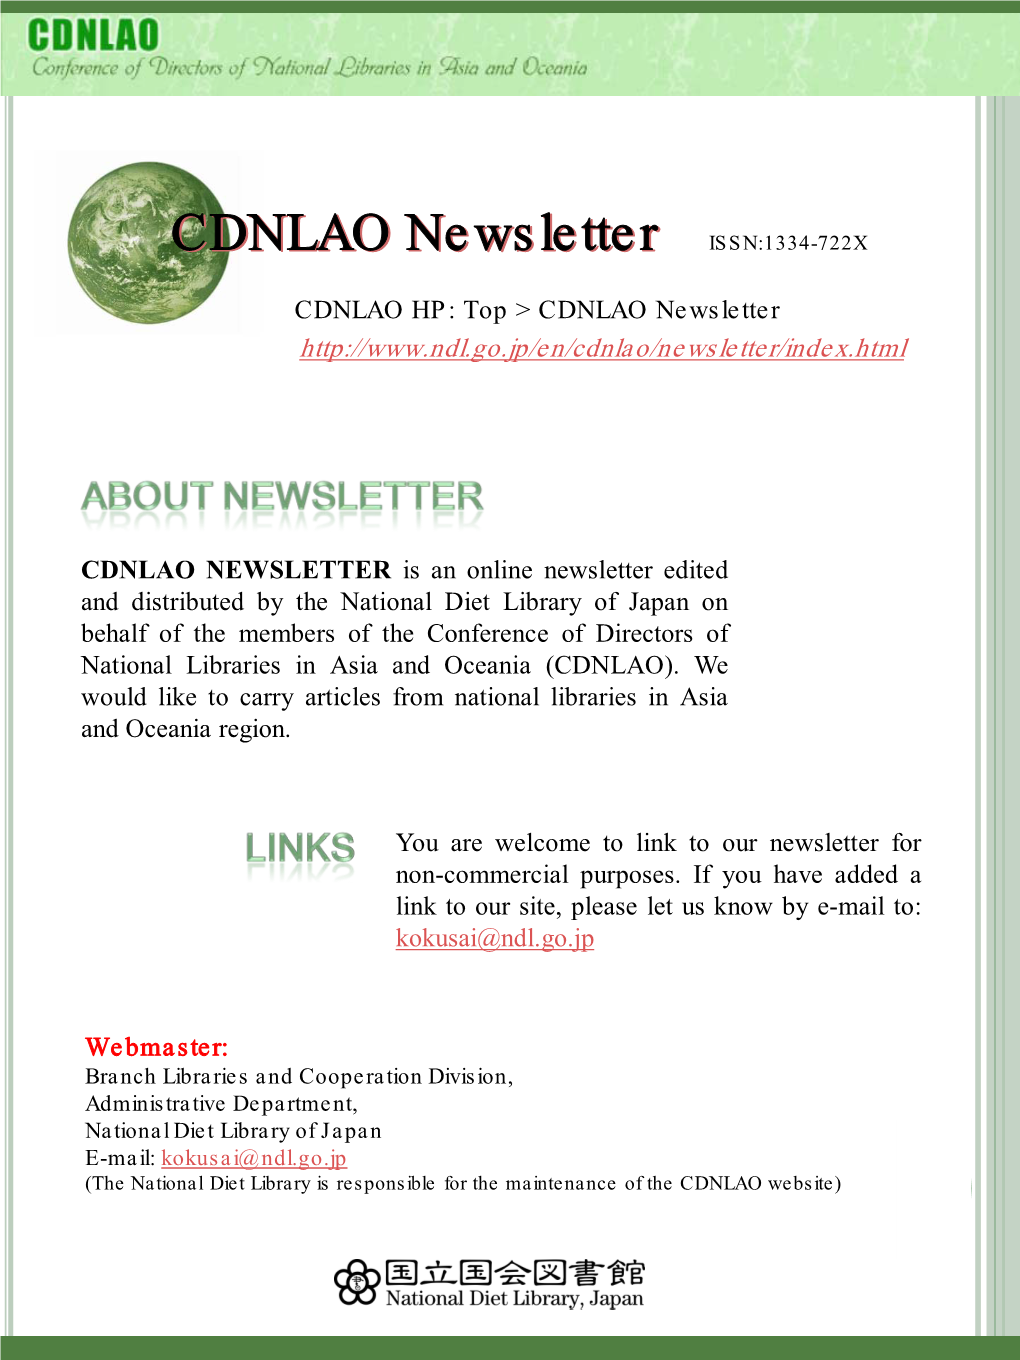 CDNLAO Newsletternewsletter ISSN:1334 -722X